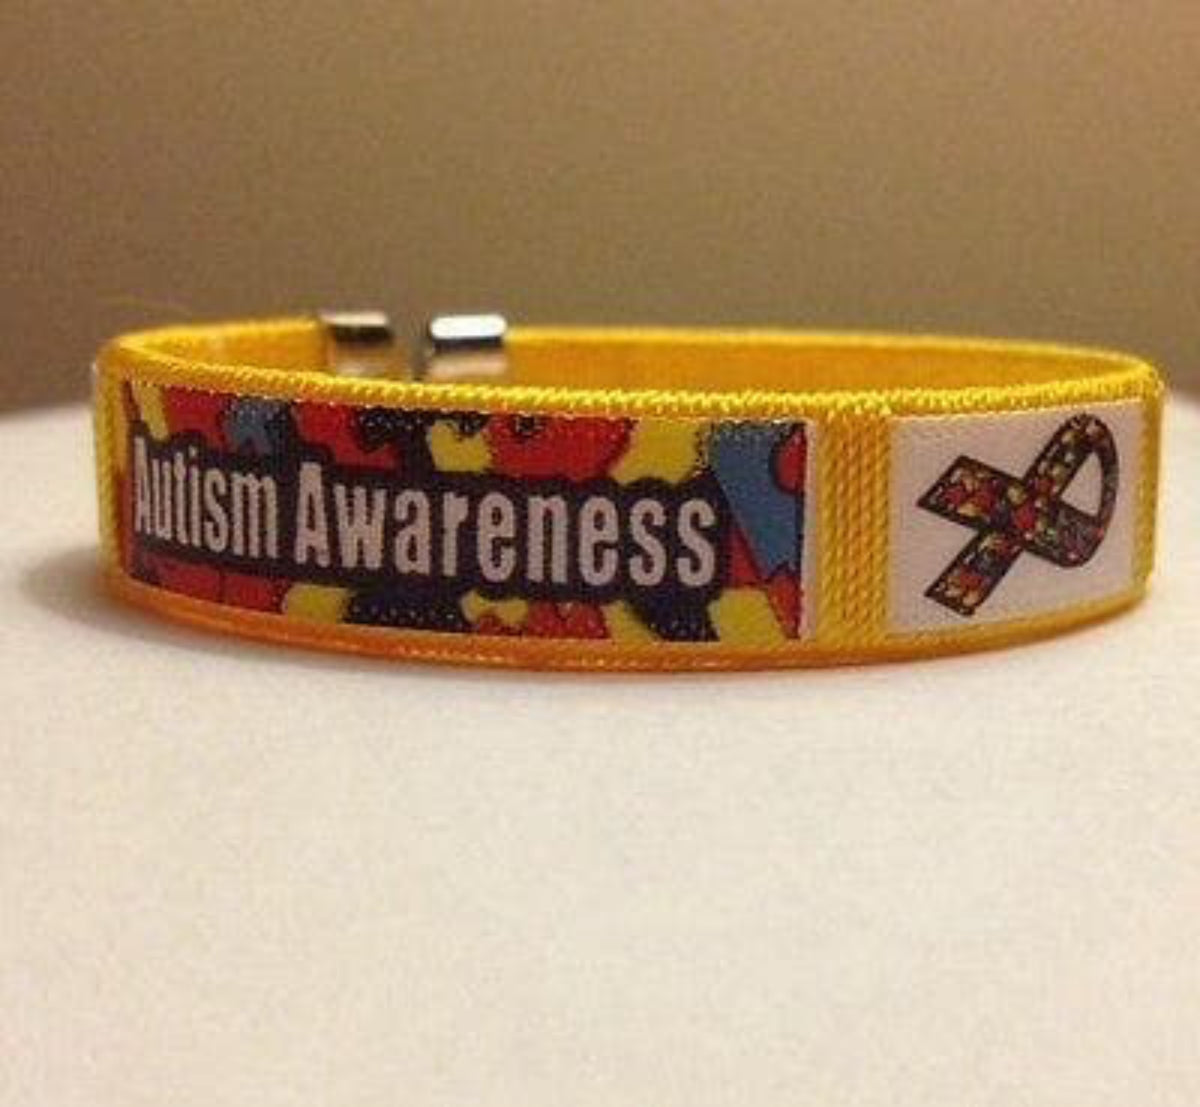 Fabric Autism and Asperger Awareness Bangle Bracelet - The House of Awareness